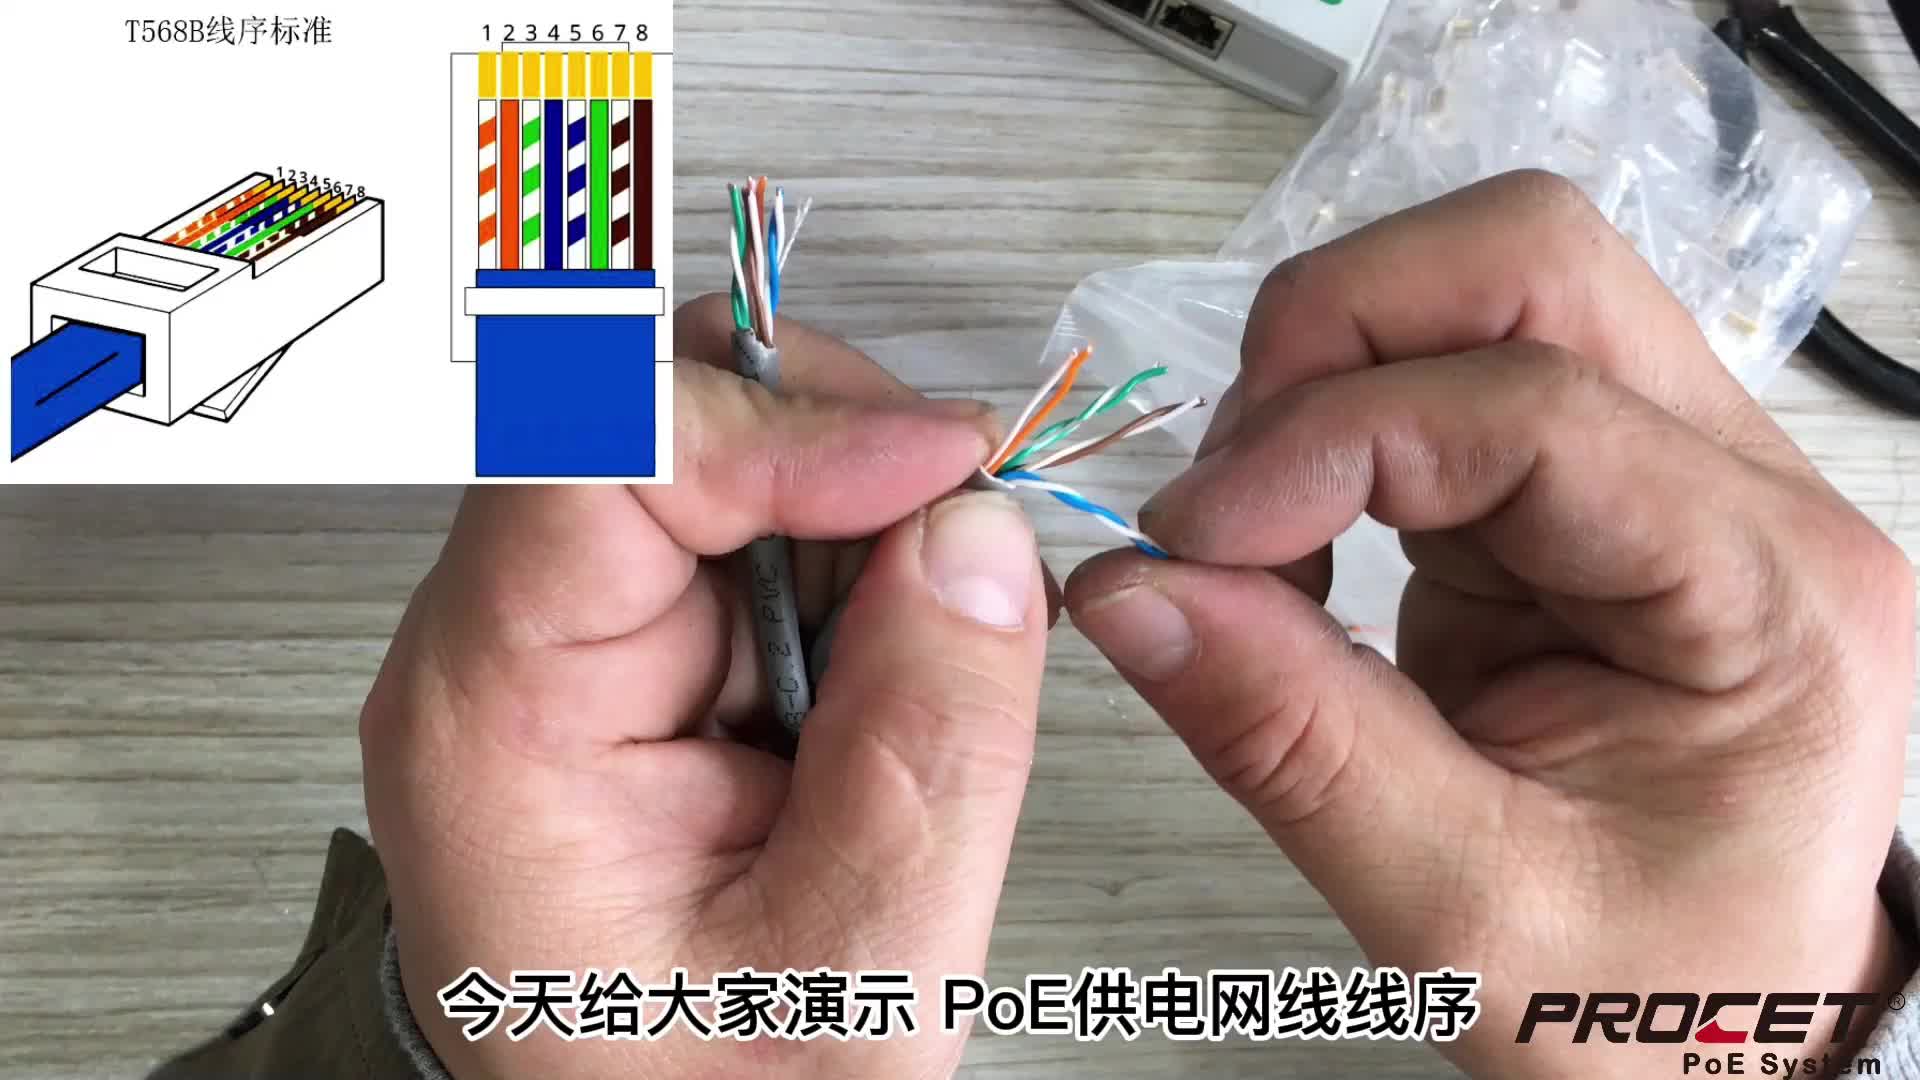 poe供电网线水晶头制作 poe供电线序 poe供电网线接法  poe供电模块网线连接 PROCET
